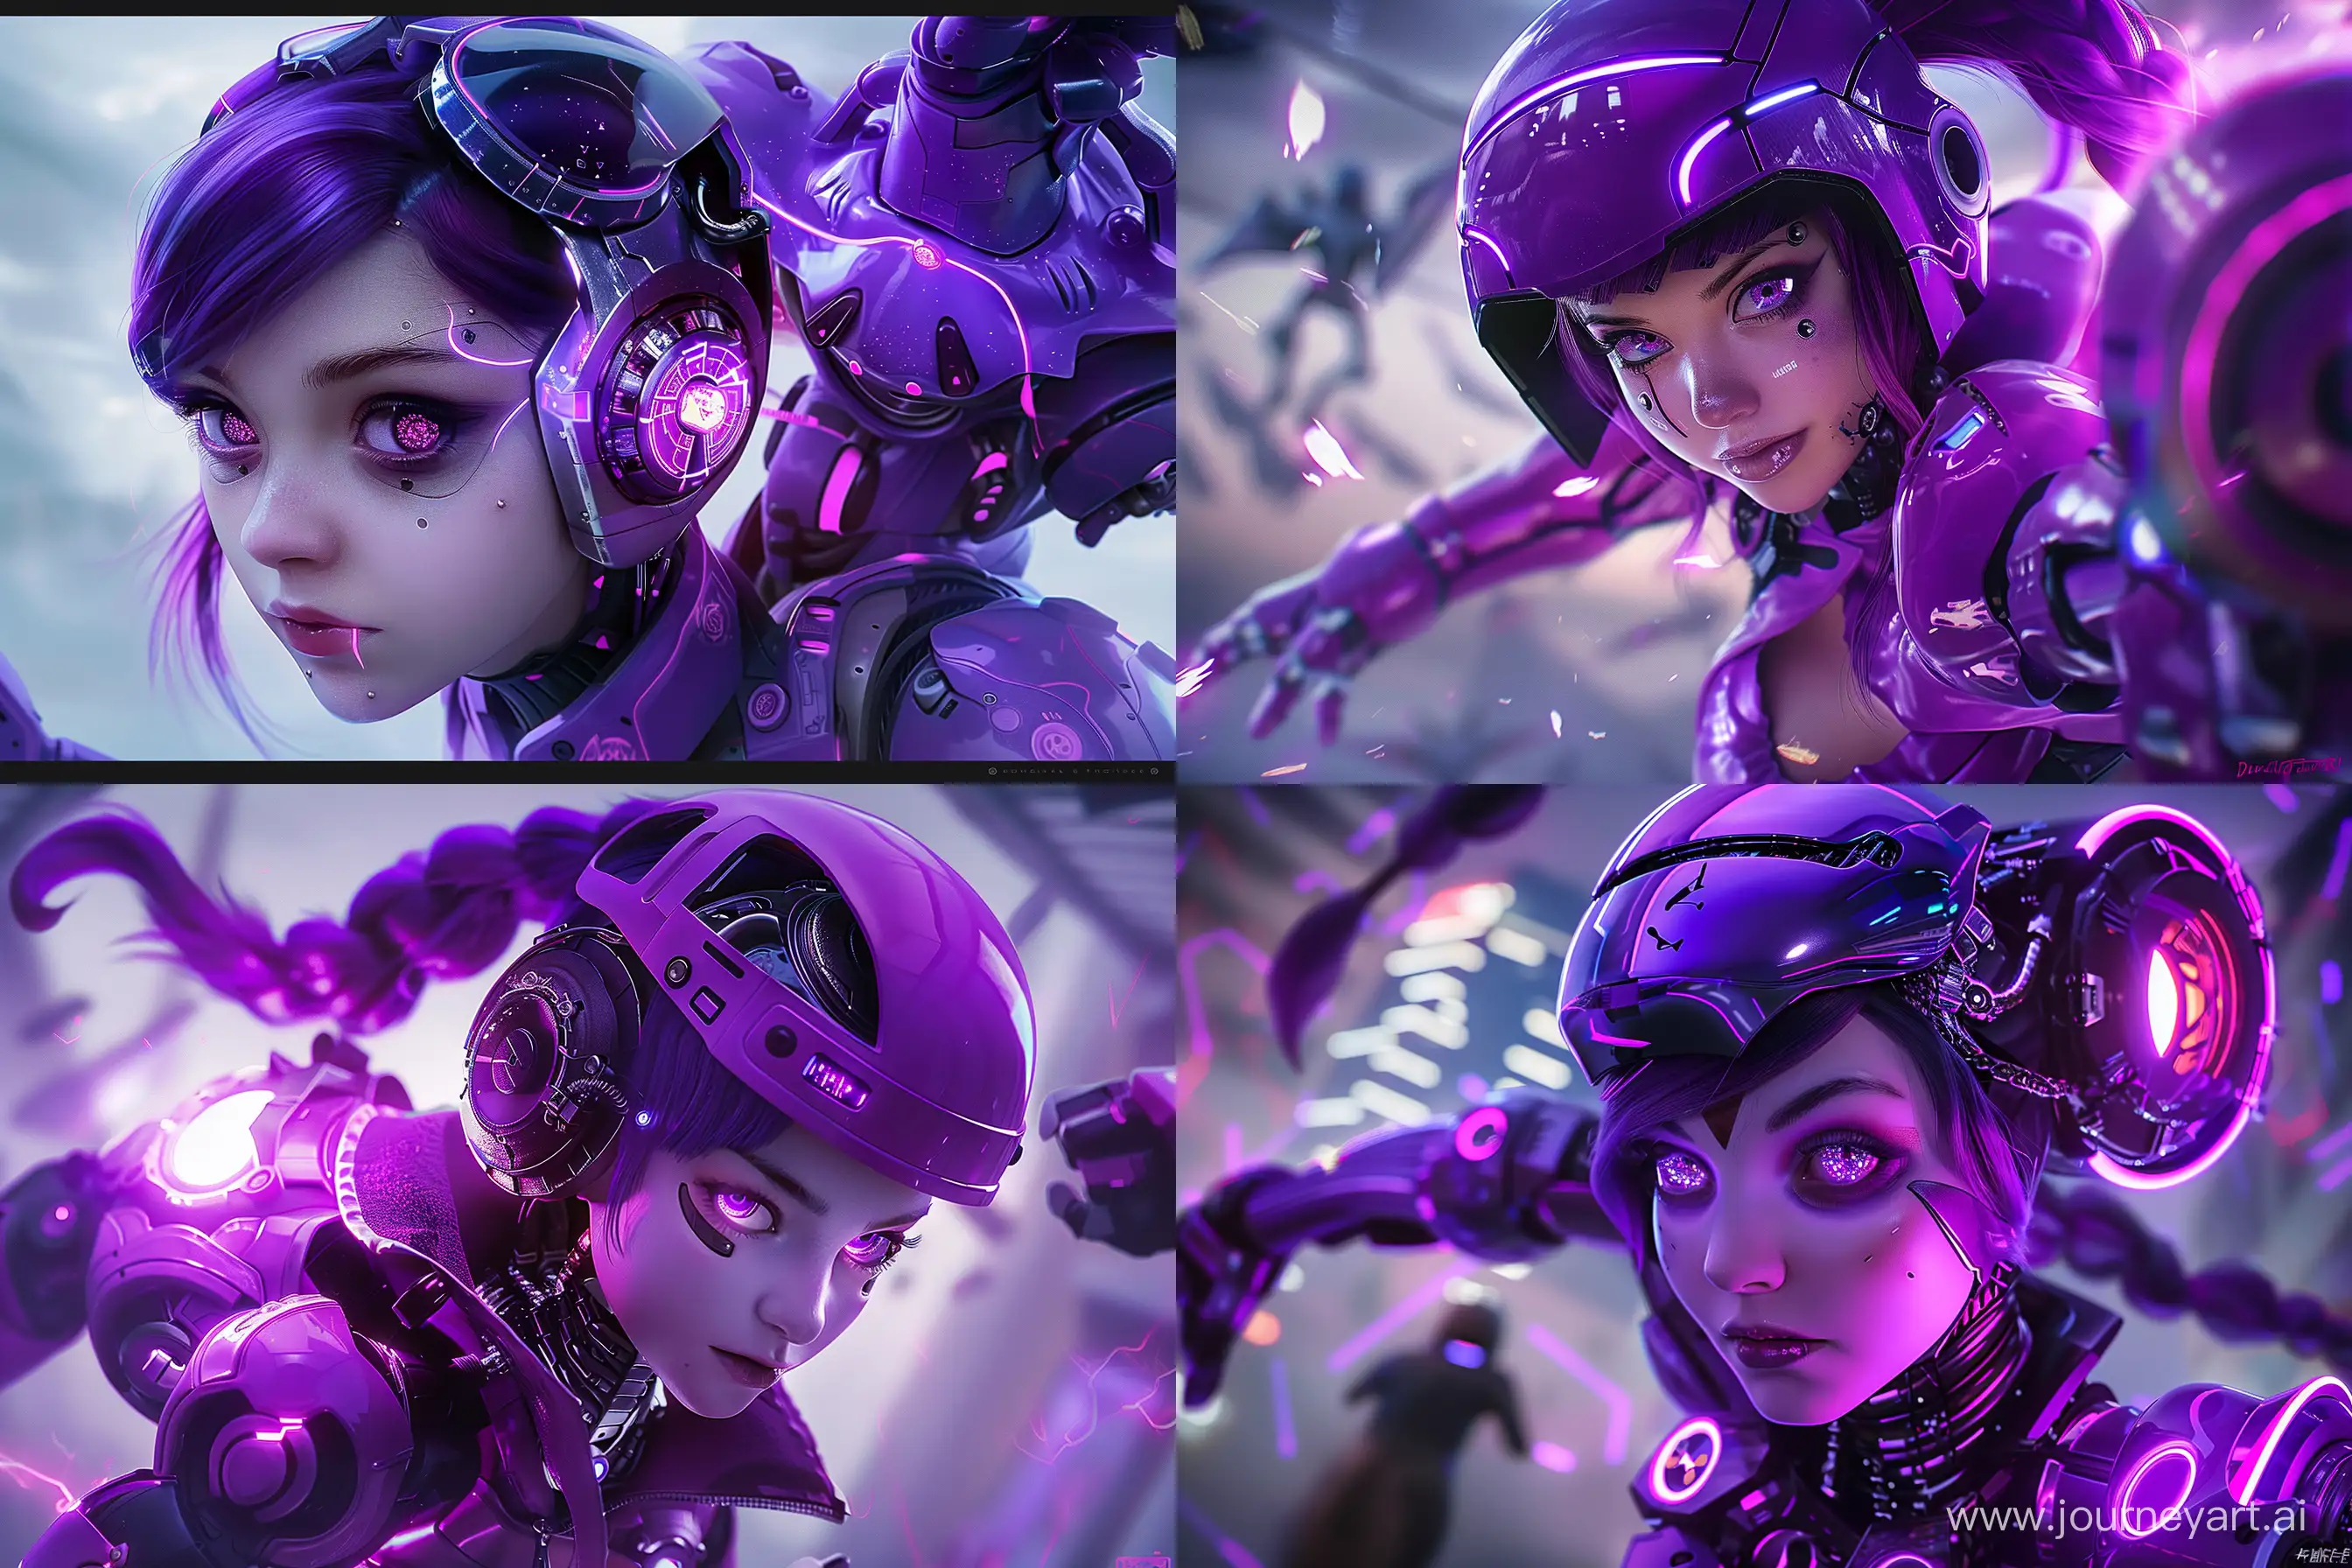 Purple-Cyborg-Girl-with-RoboCop-Style-Implants